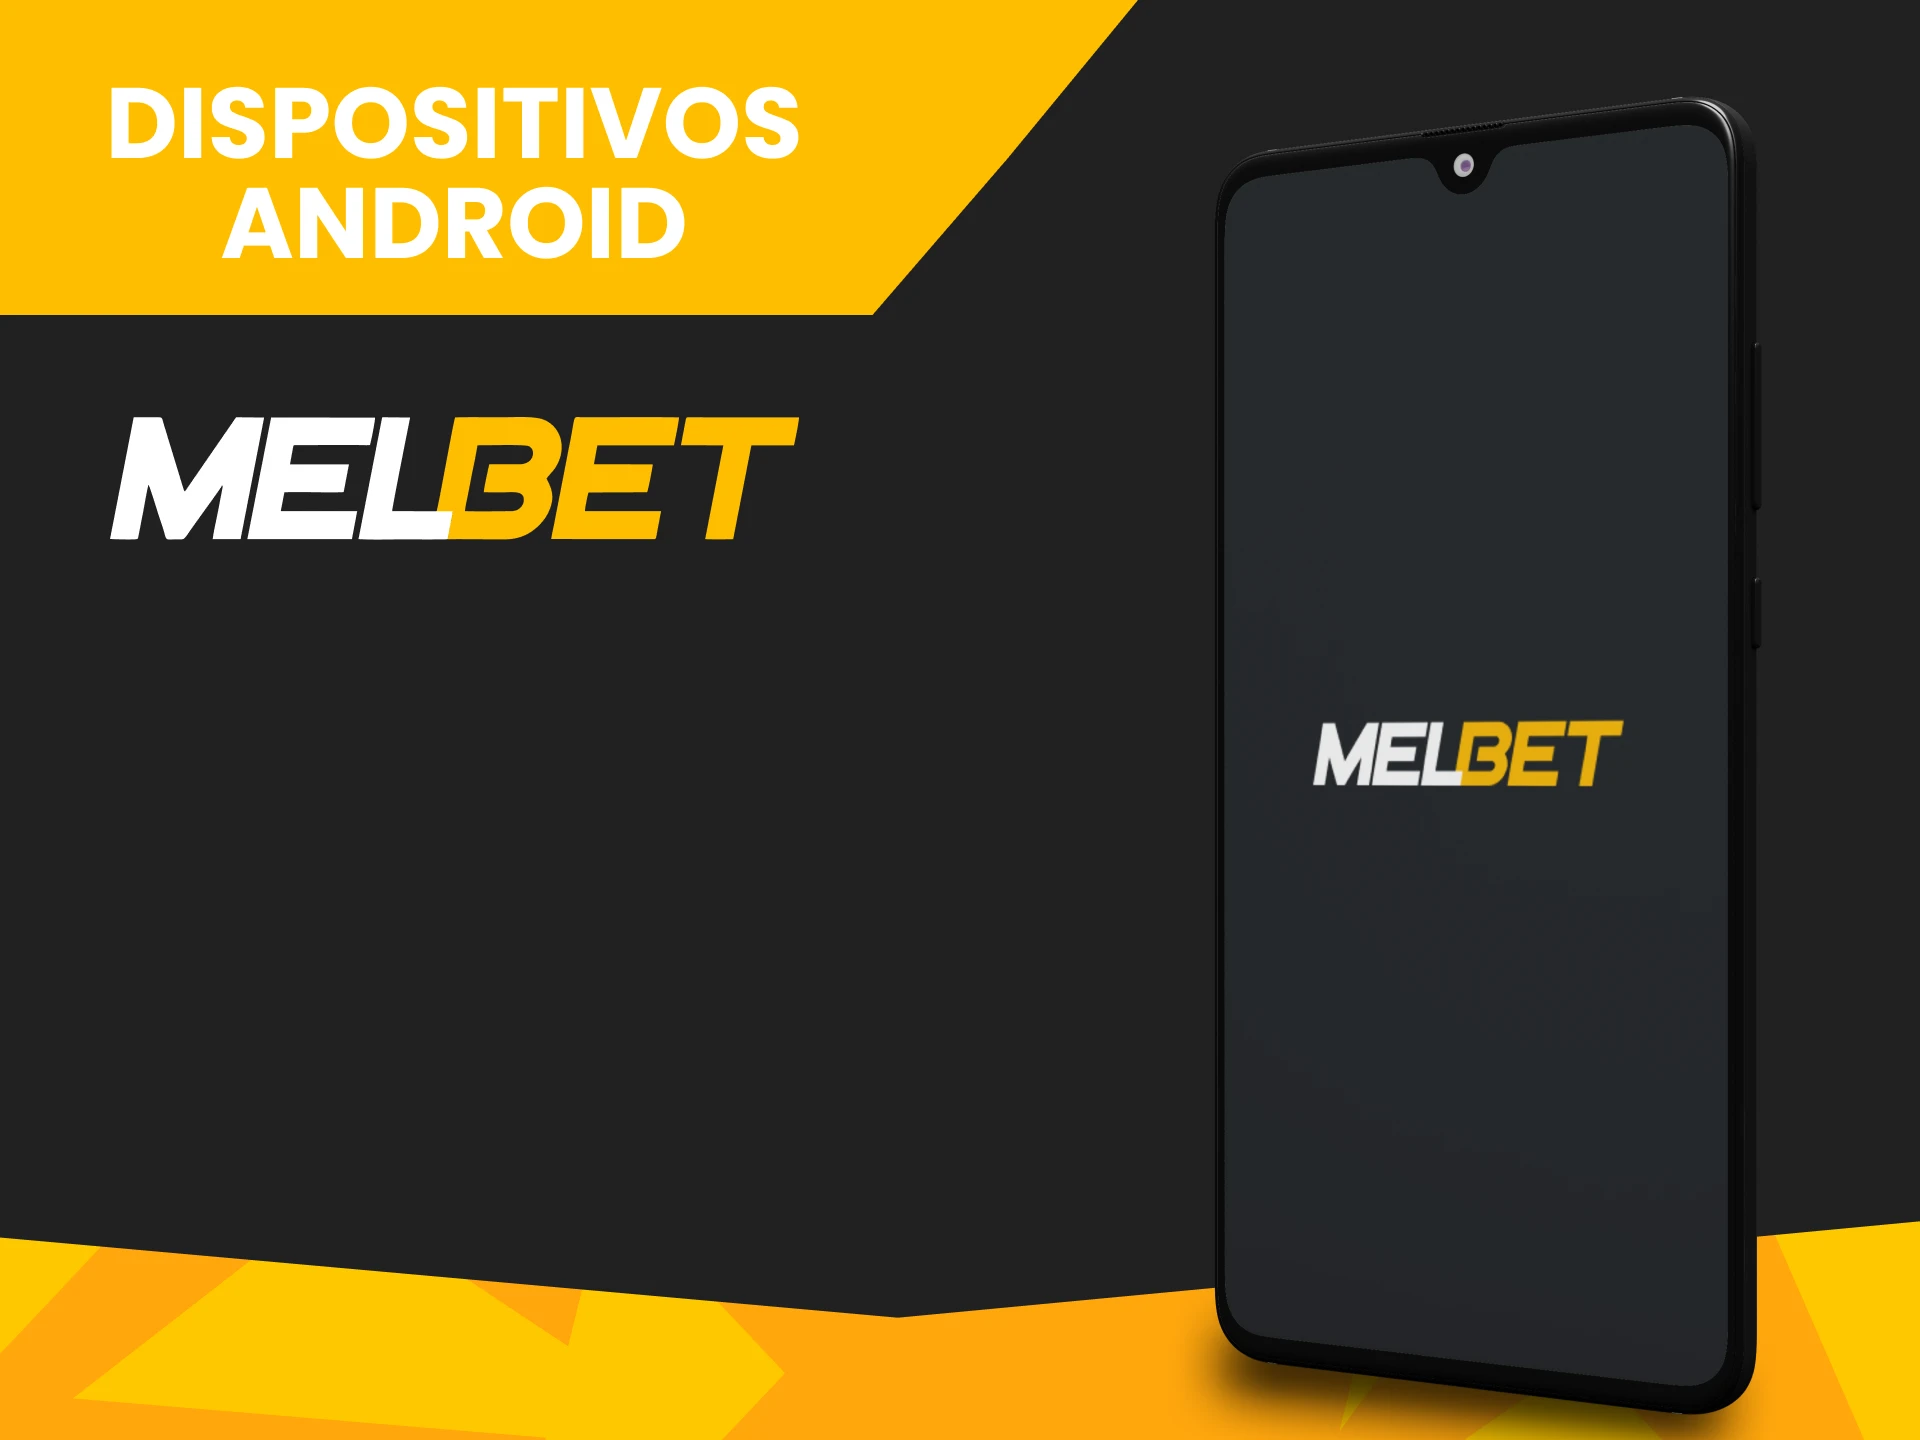 Instala la aplicación Melbet en tu dispositivo Android.